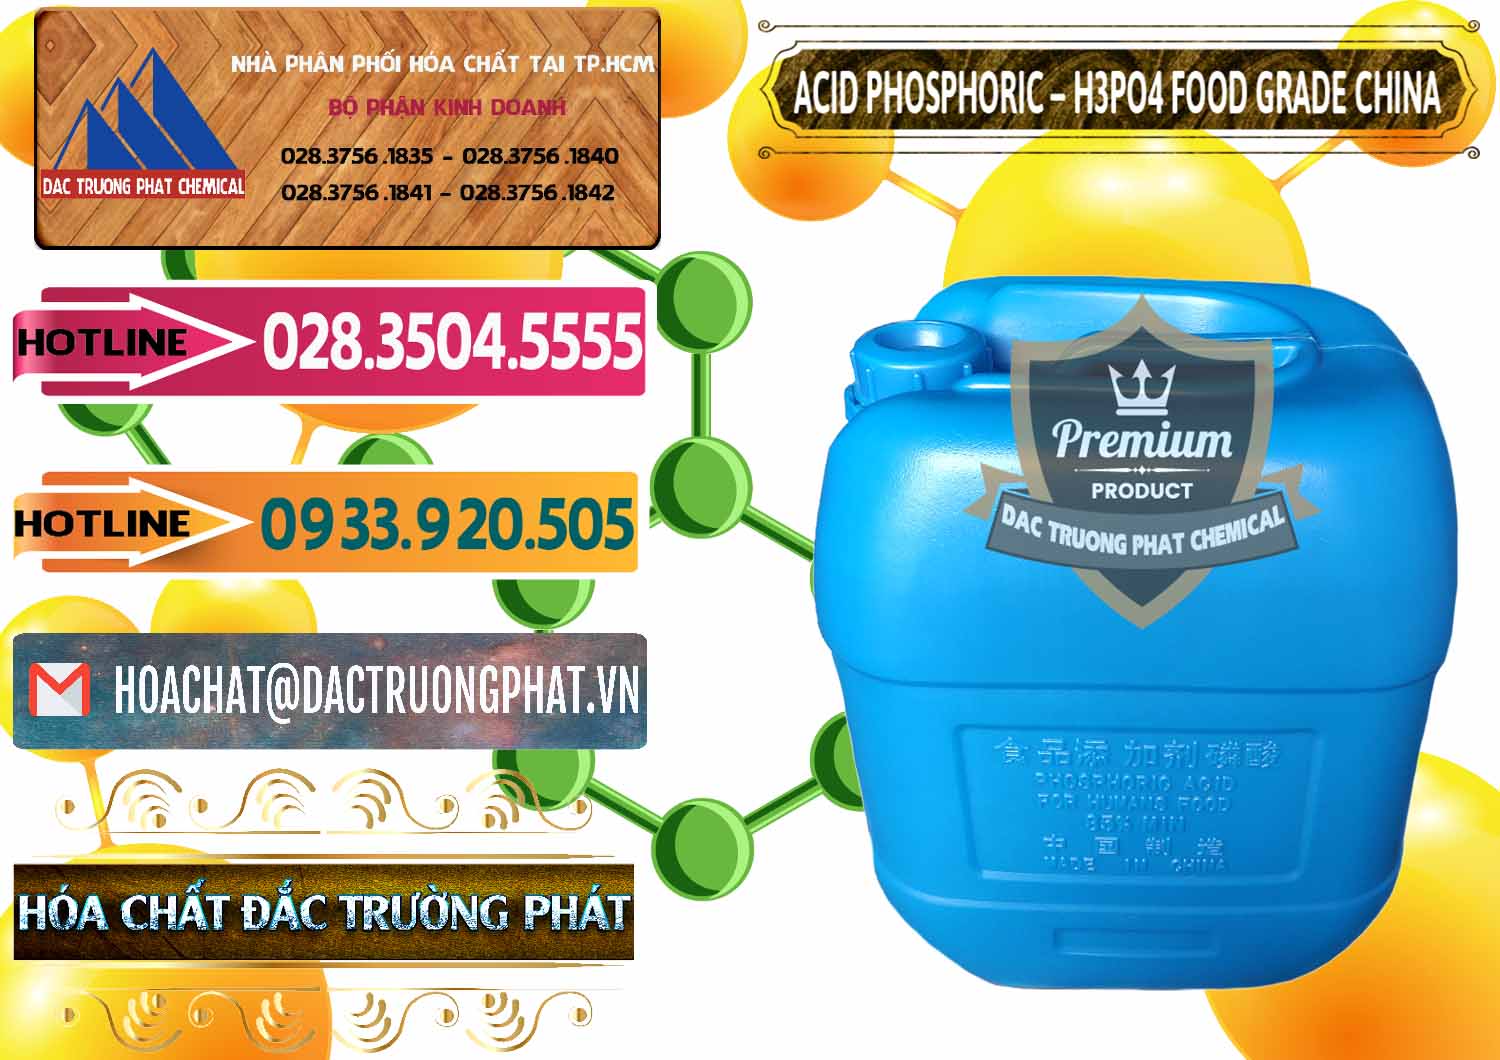 Cty chuyên bán _ cung ứng Acid Phosphoric – H3PO4 85% Food Grade Trung Quốc China - 0015 - Nơi chuyên cung ứng _ phân phối hóa chất tại TP.HCM - dactruongphat.vn